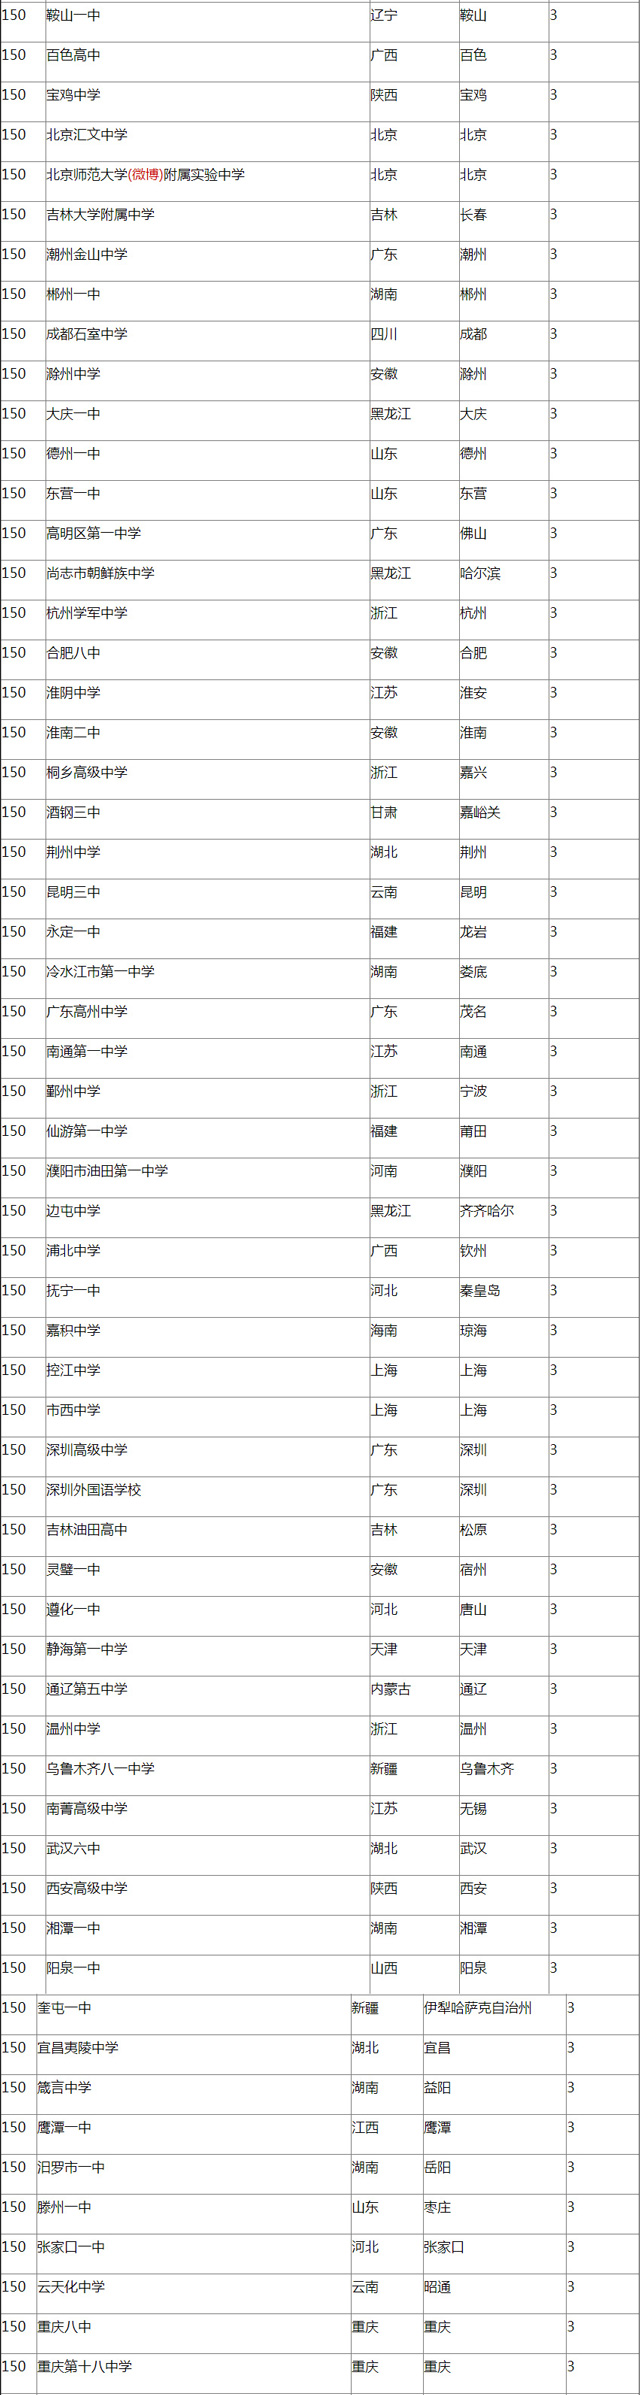 2016中国顶尖中学排行榜